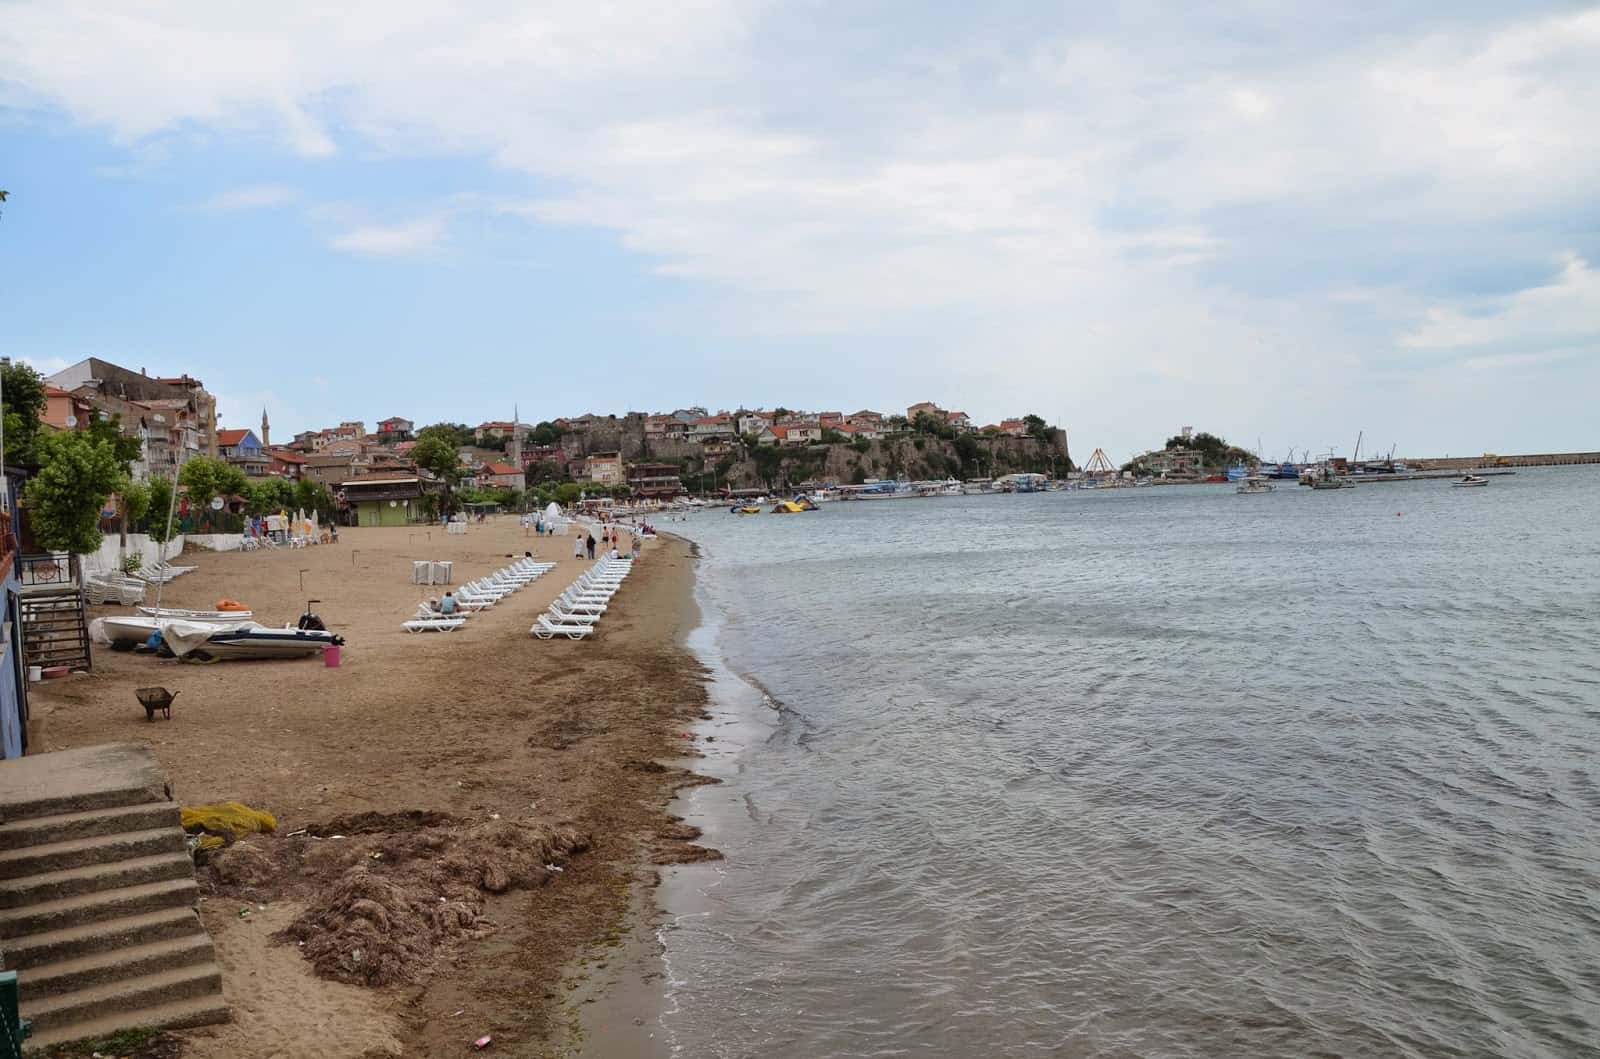 Beach at Büyük Limanı in Amasra, Turkey